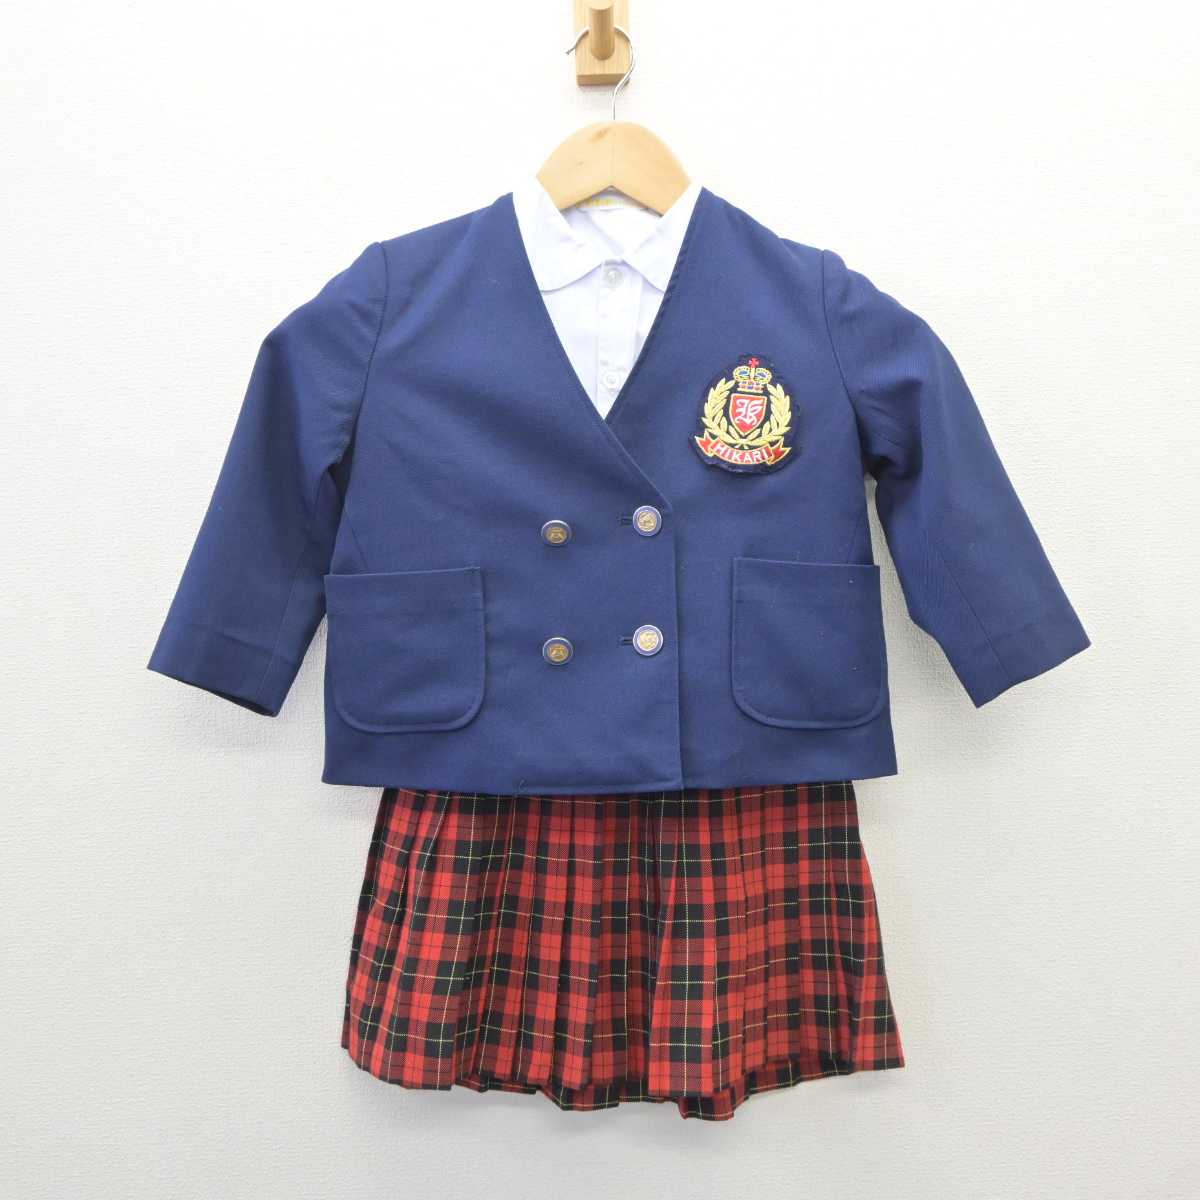 光明幼稚園 女子用制服、その他一式 ほぼ新品 - キッズ用品